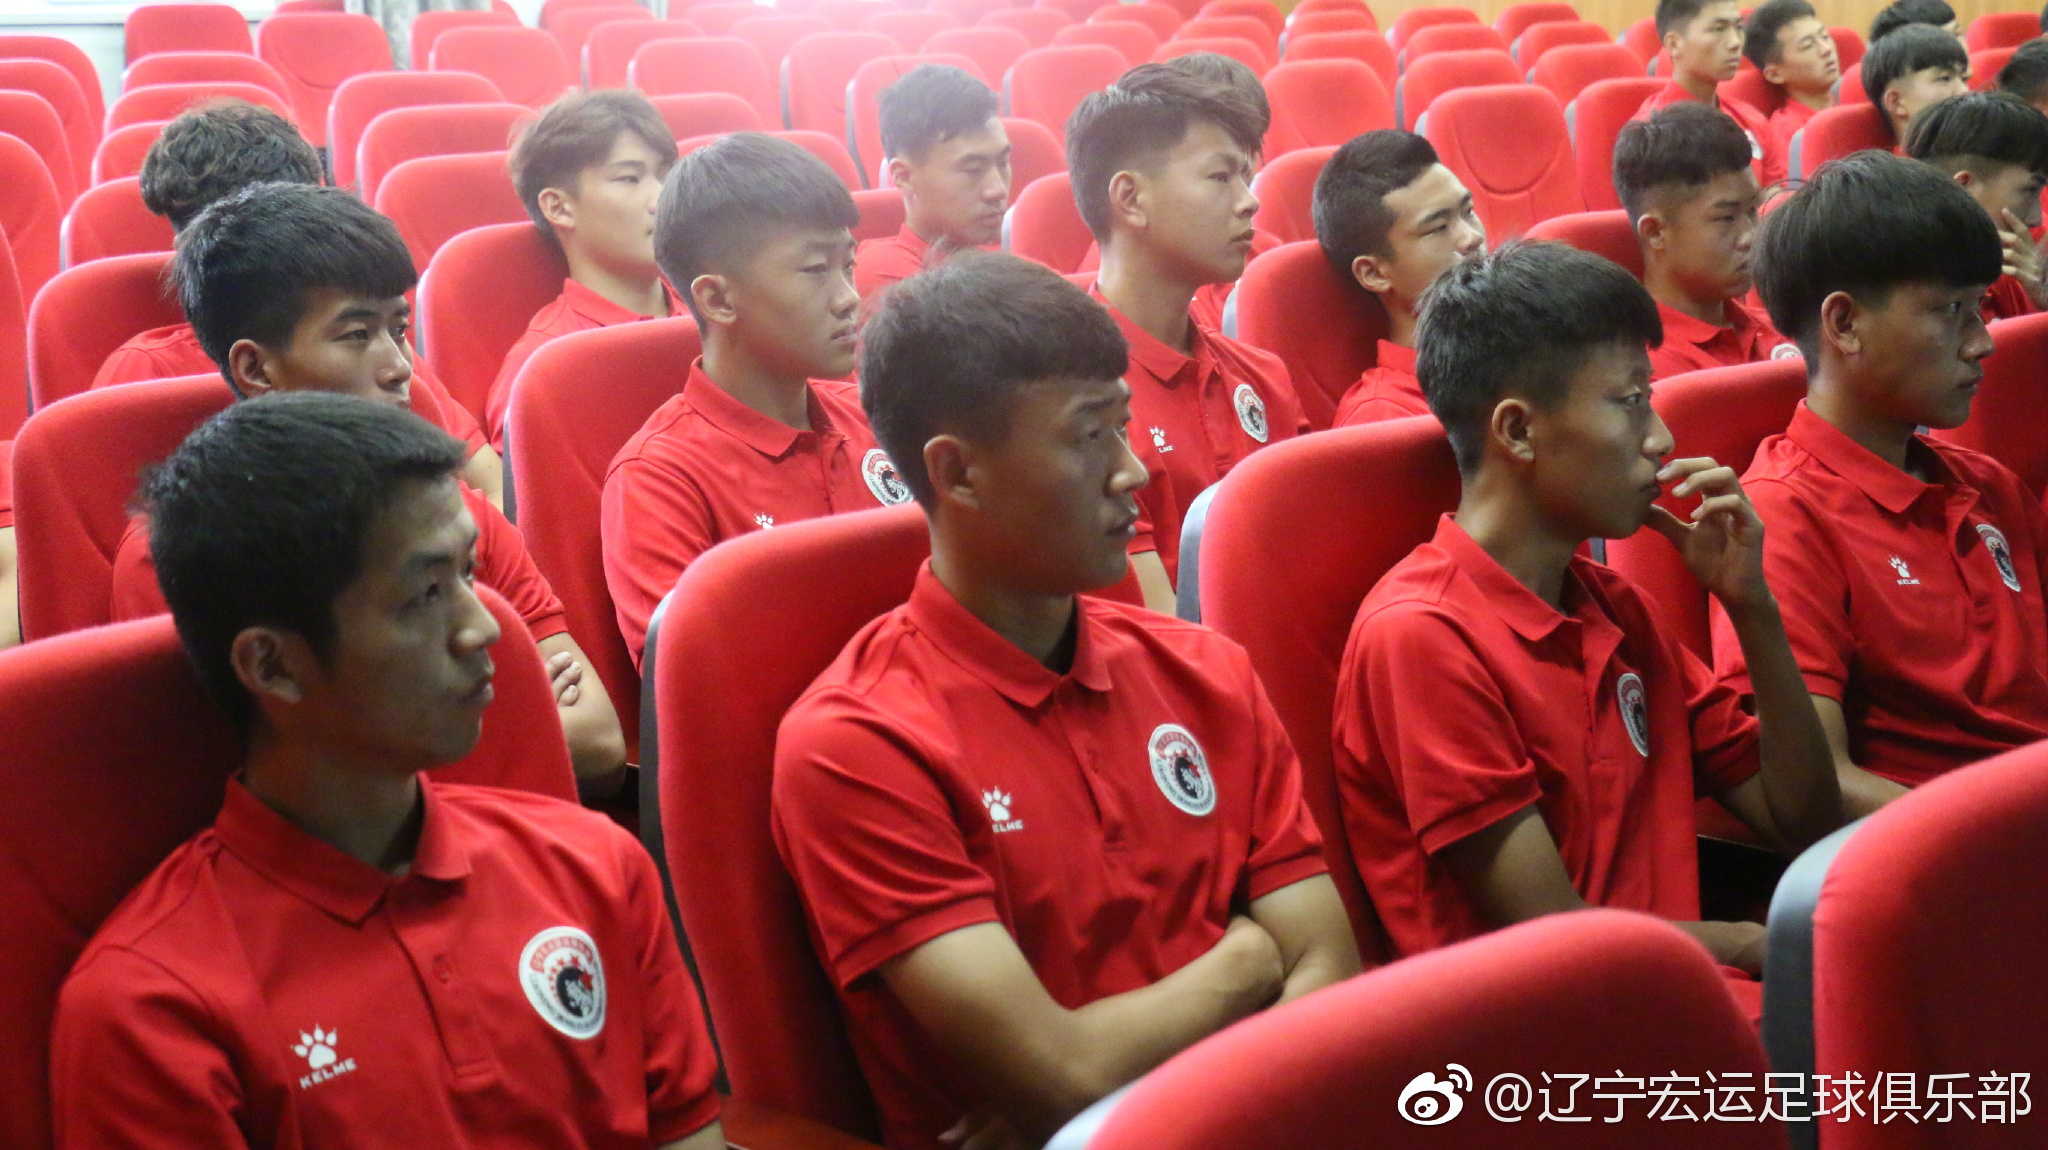 今天上午,辽宁宏运足球俱乐部组织U19、U17两